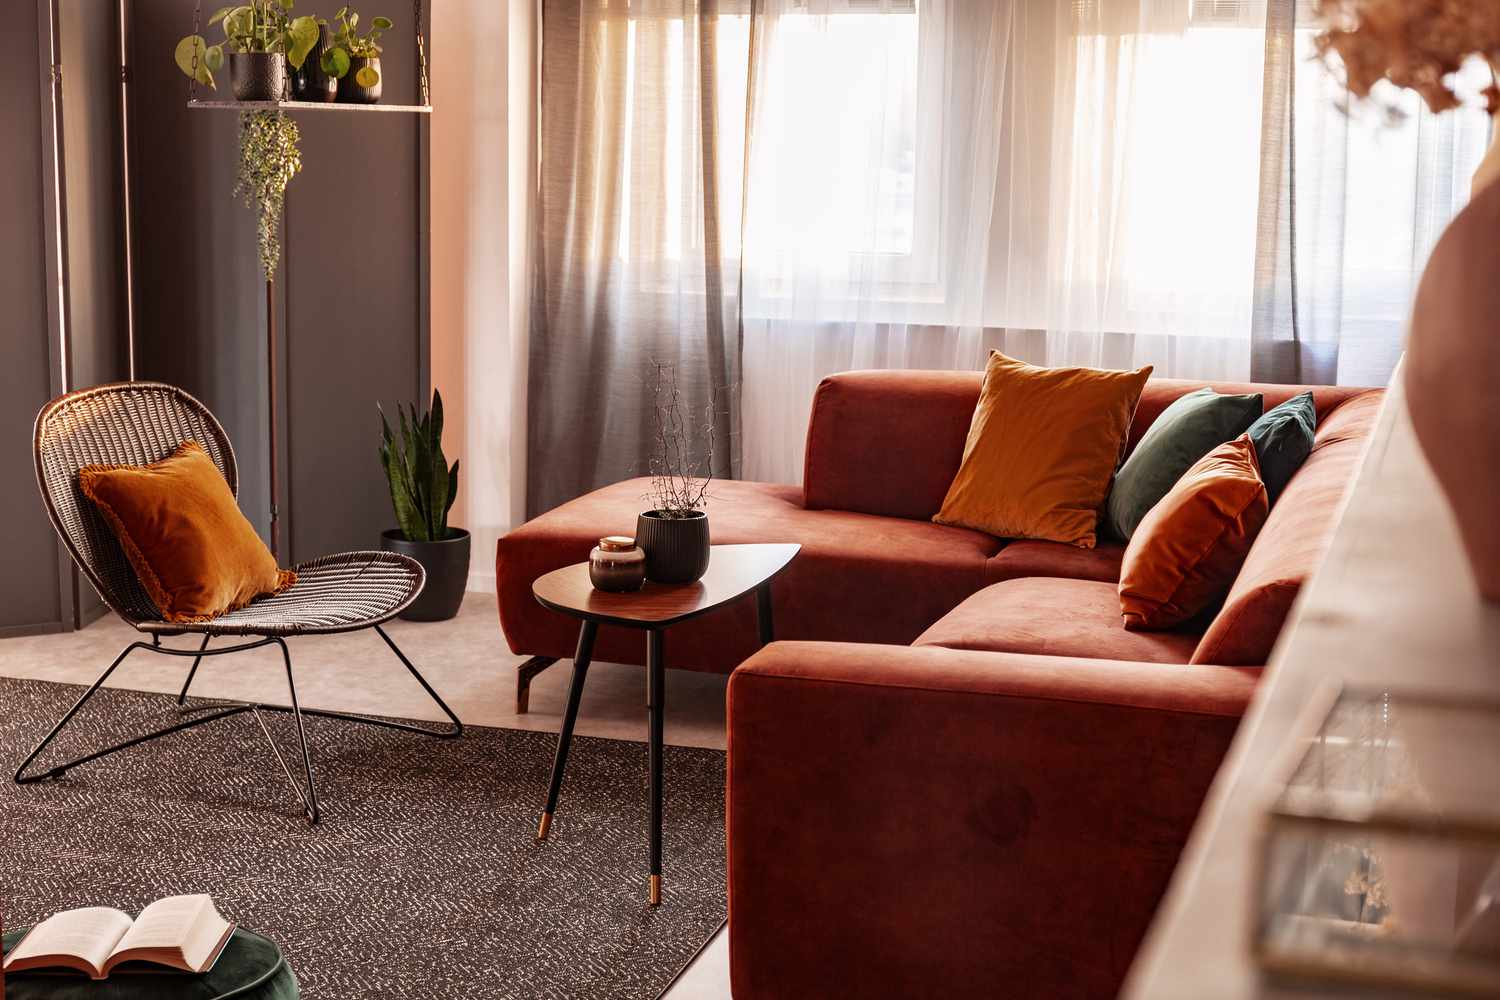 Pequena mesa de centro em frente a um confortável sofá de canto no interior de uma sala de estar com cores de outono